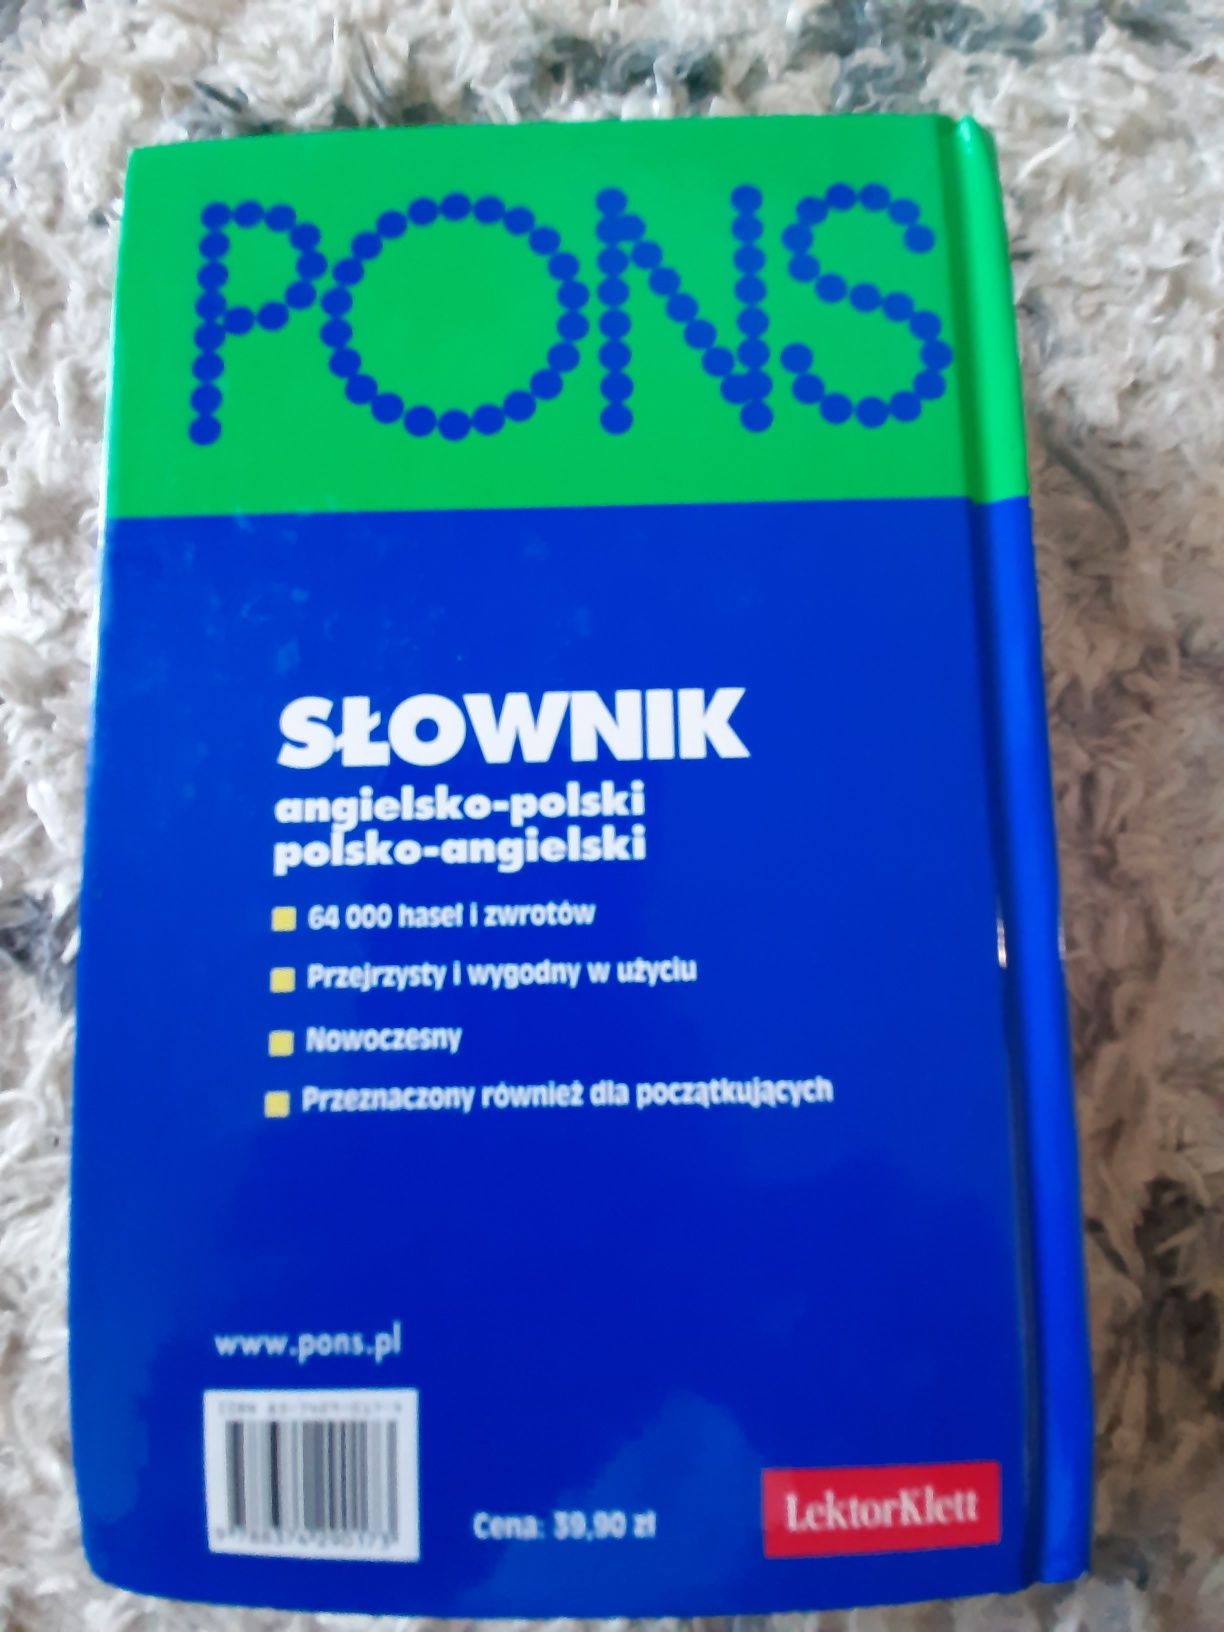 Pons słownik ang-pol pol-ang (GRDP4)